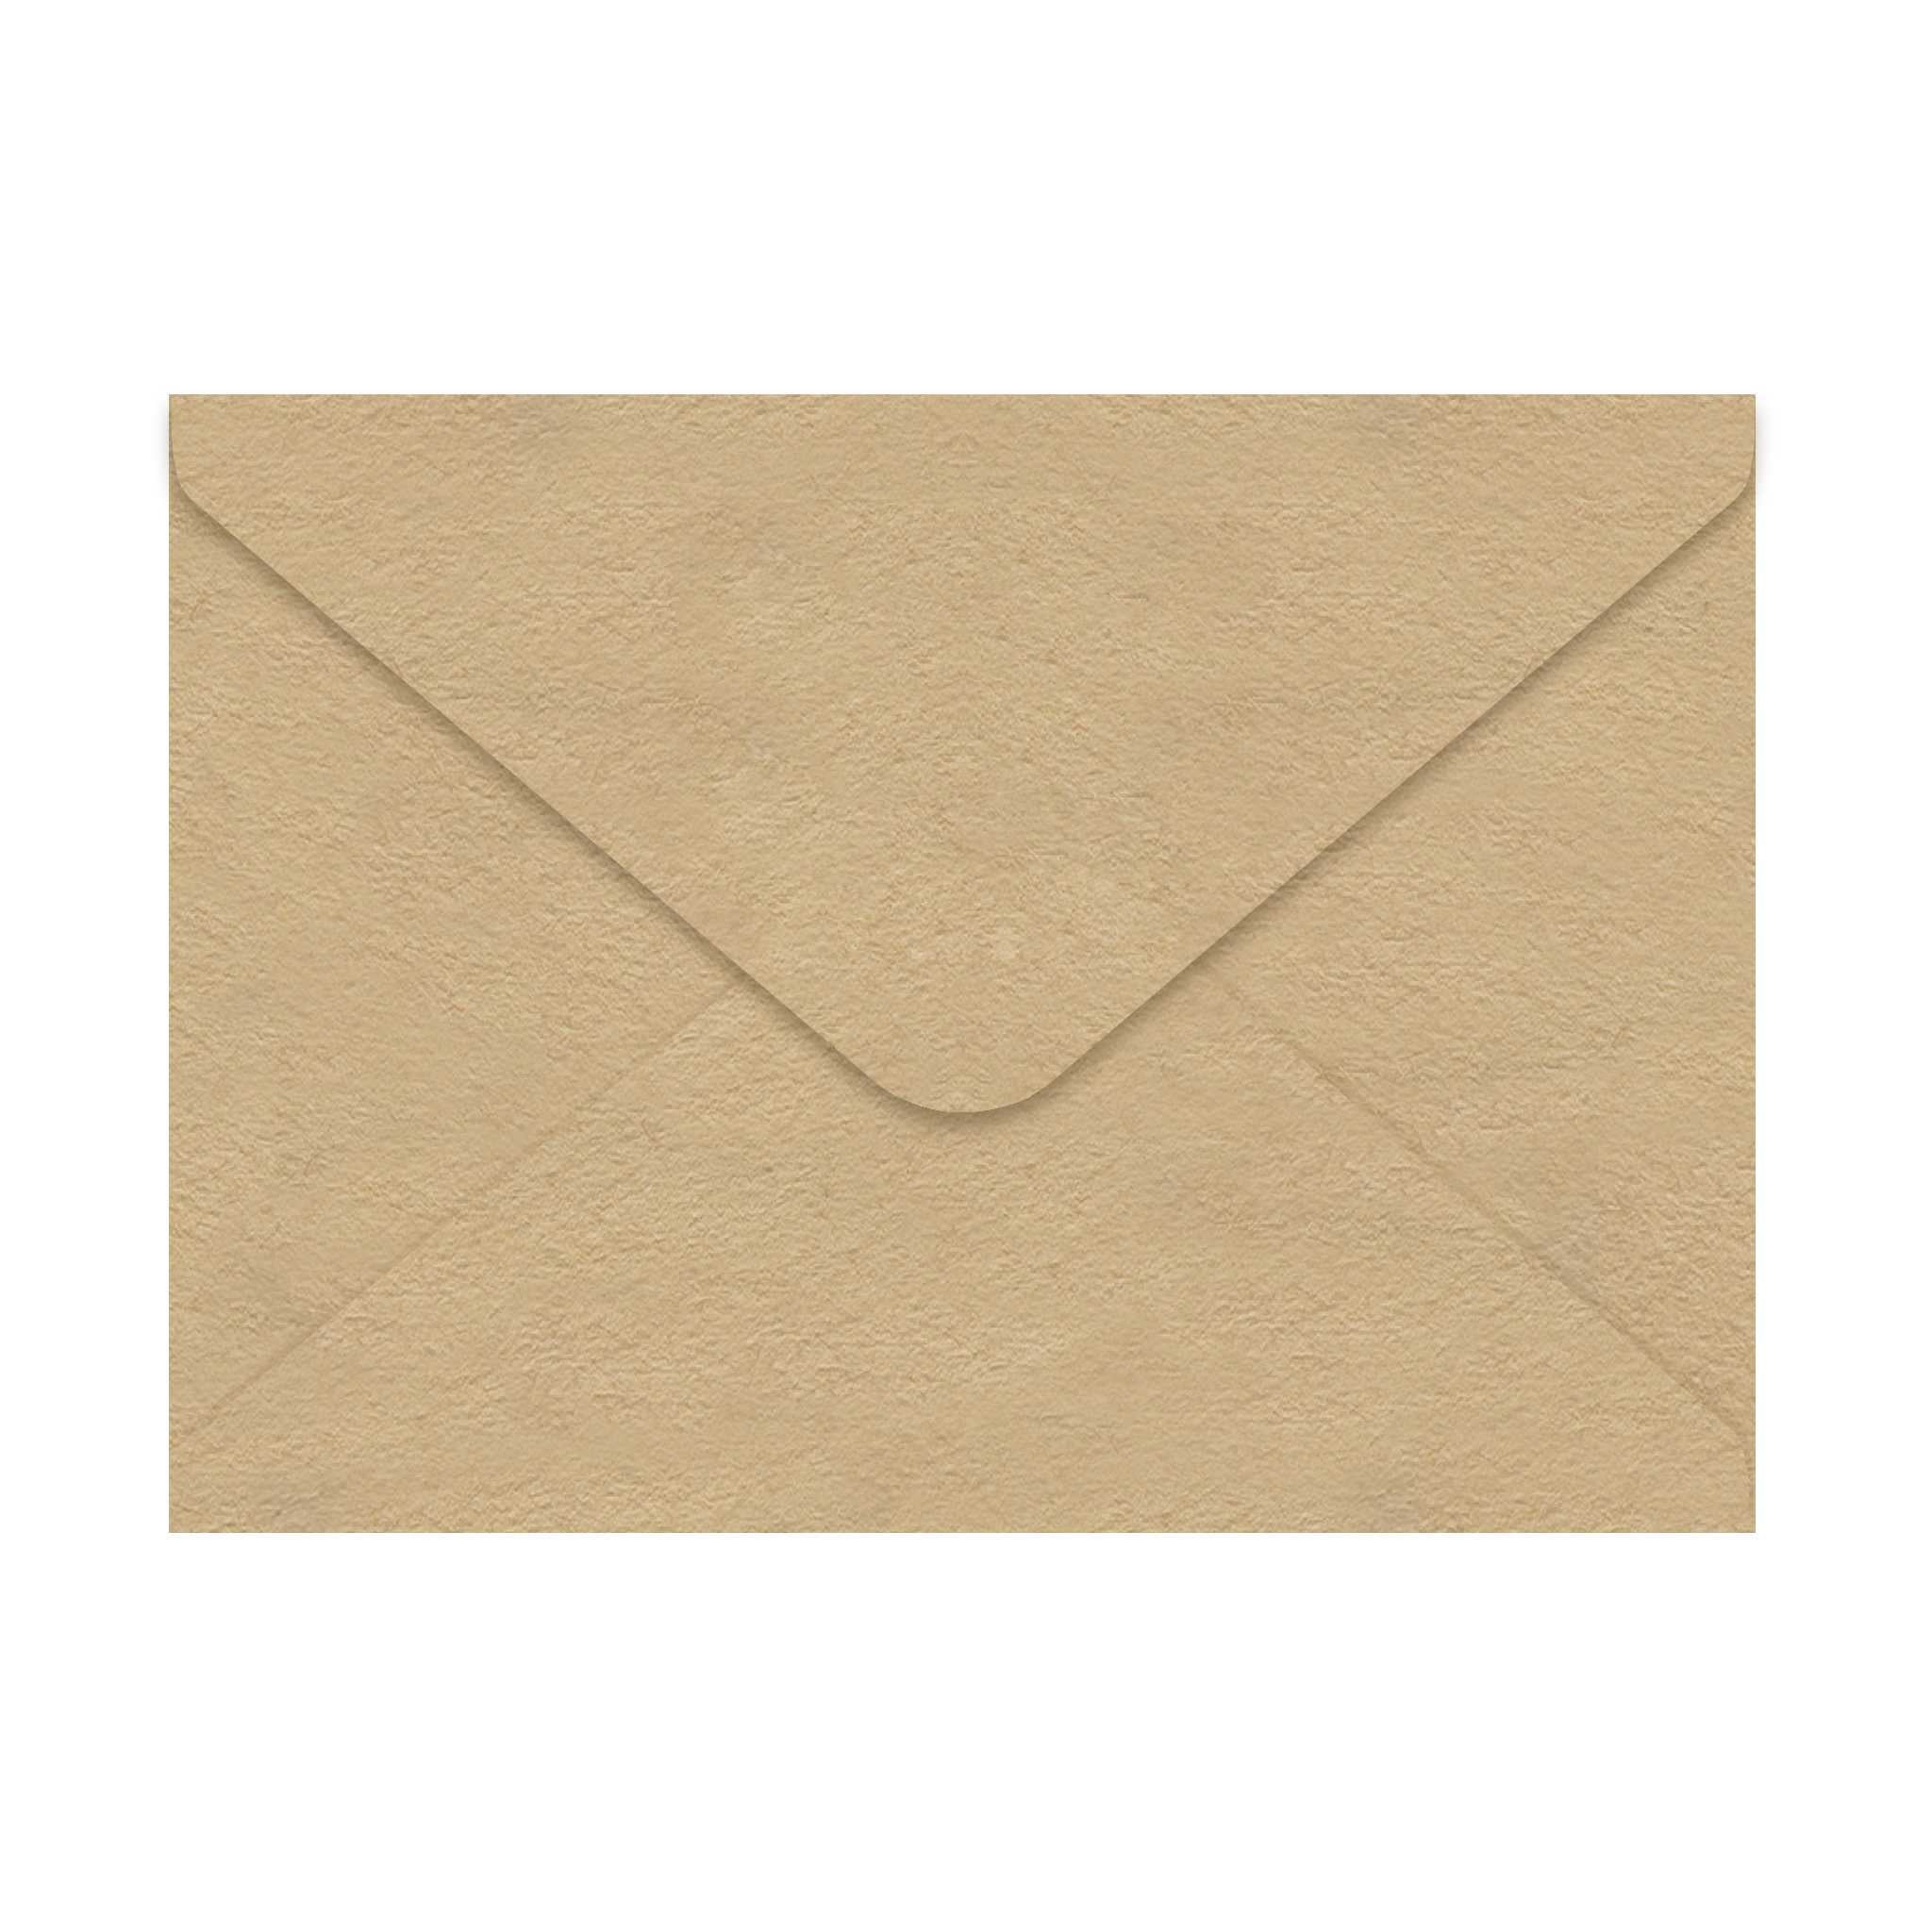 6" x 5" Kraft Envelopes